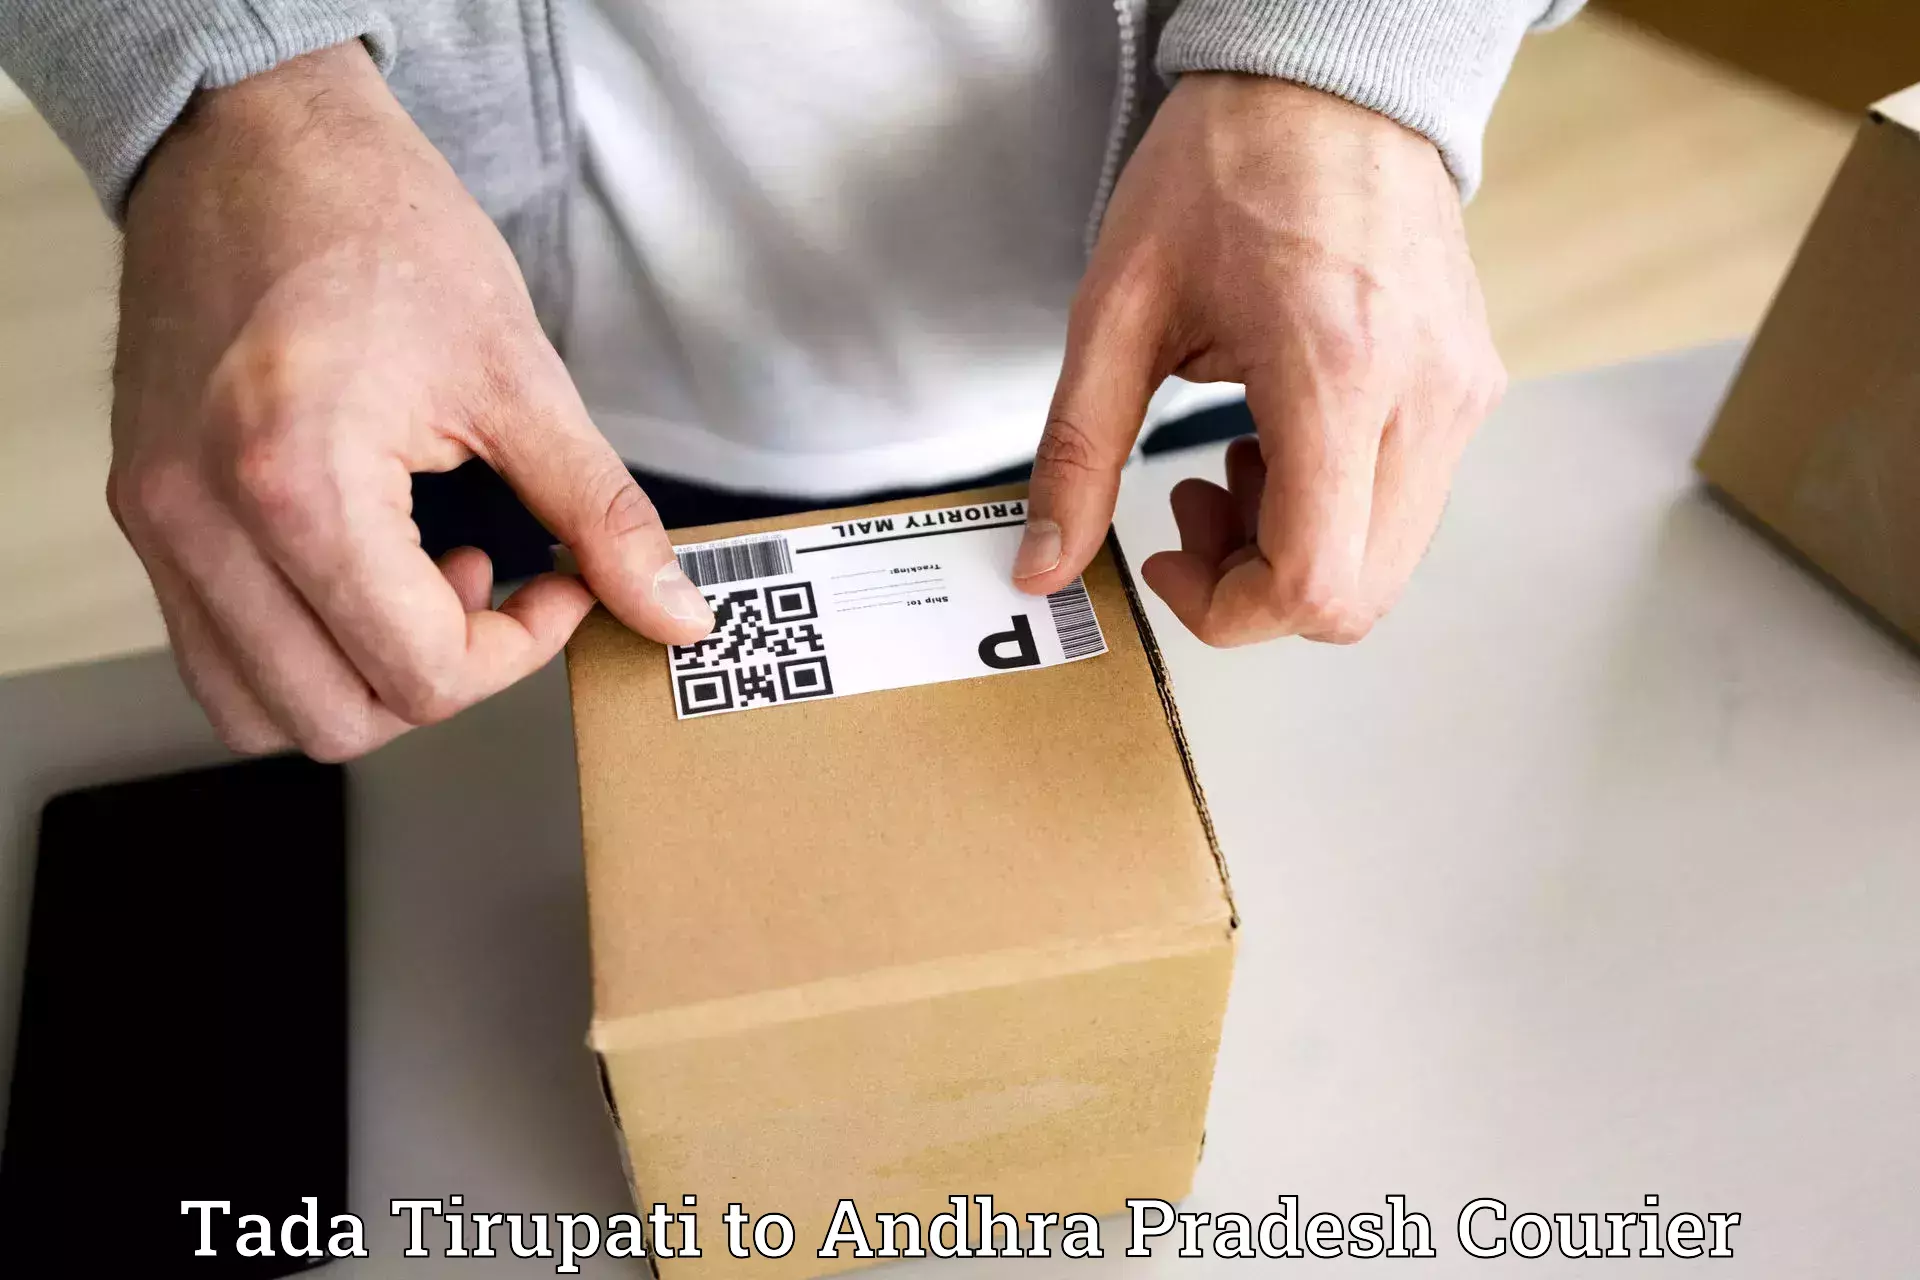 Pharmaceutical courier Tada Tirupati to Kovvur